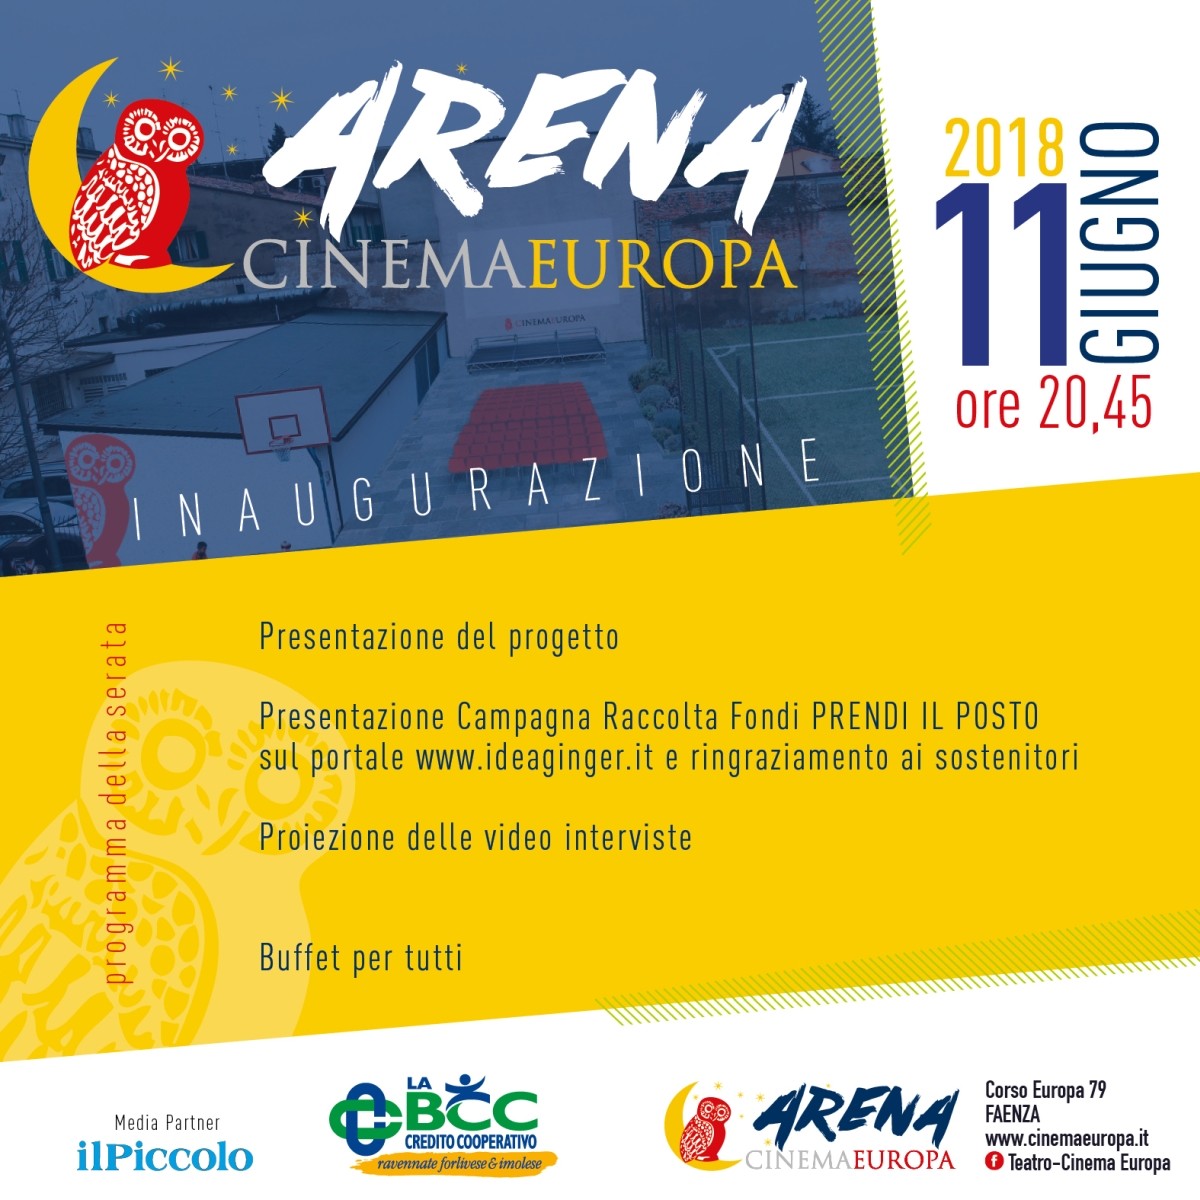 Inaugura l'Arena Cinema Europa a Faenza